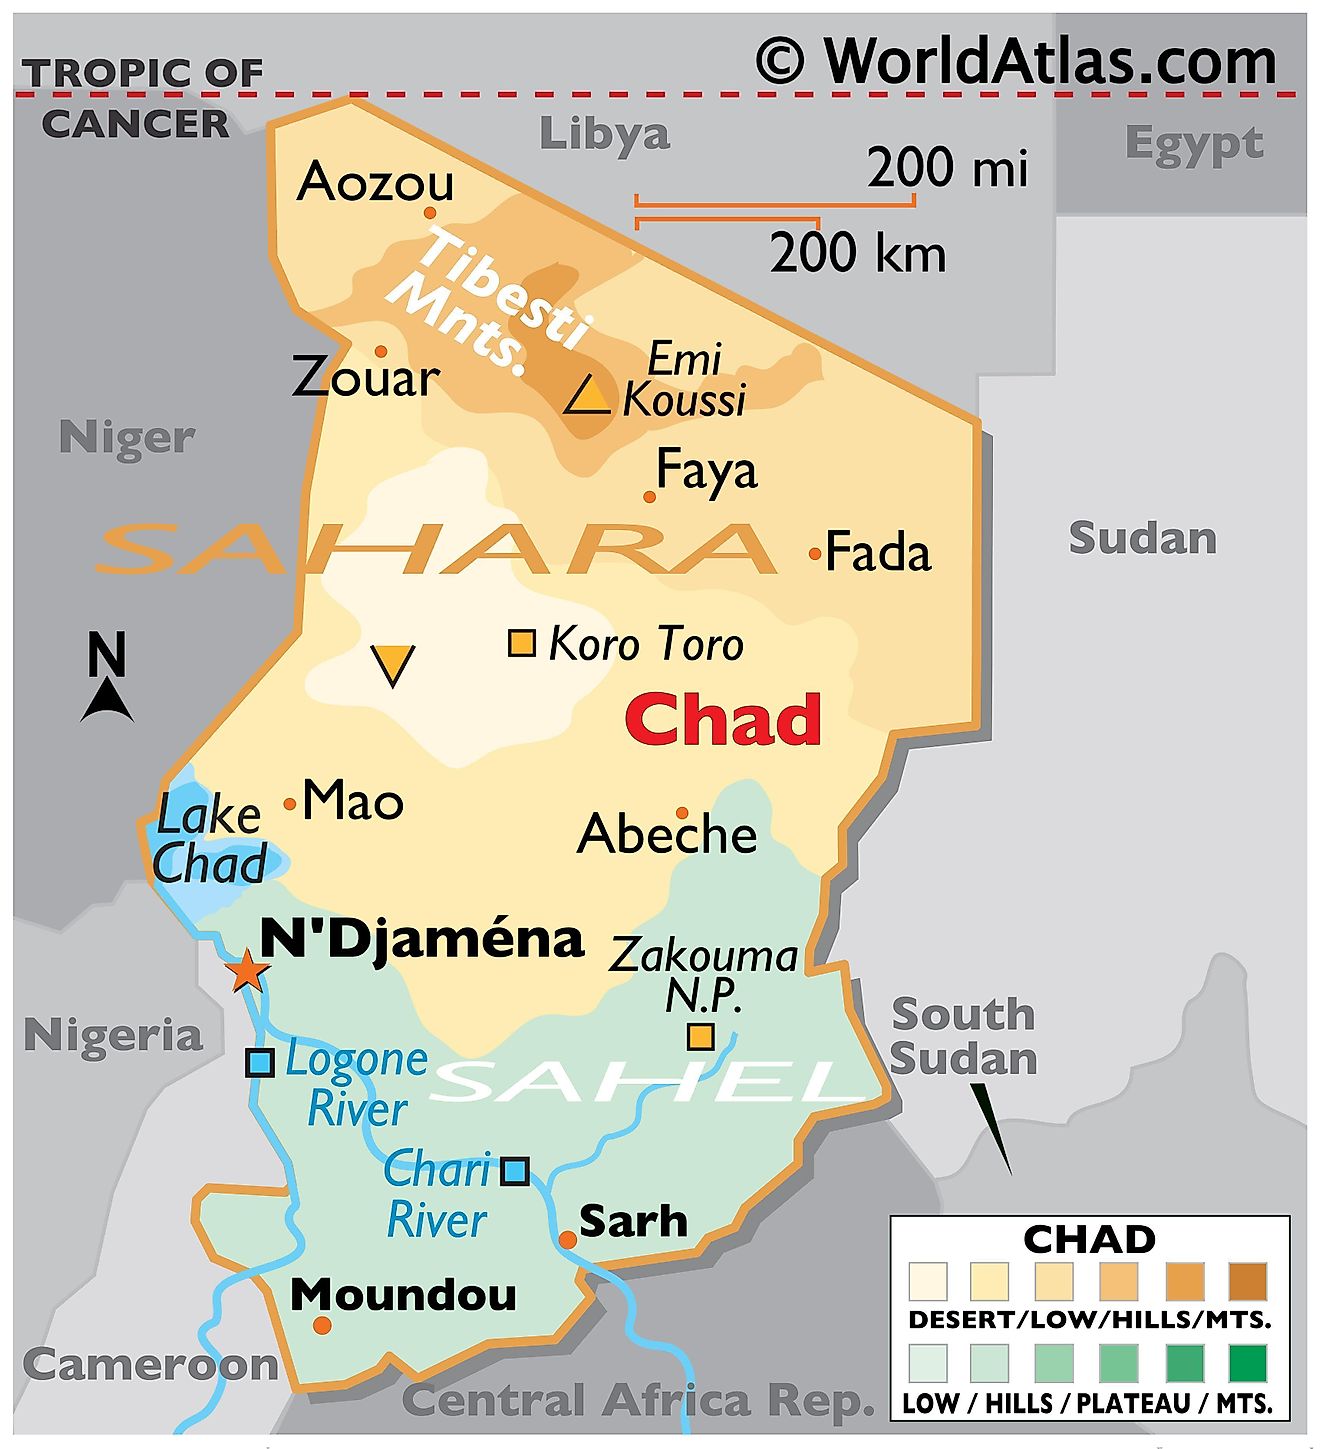 Mapa físico de Chad con límites estatales, relieve, ríos principales, lago Chad, cadenas montañosas y ciudades importantes.